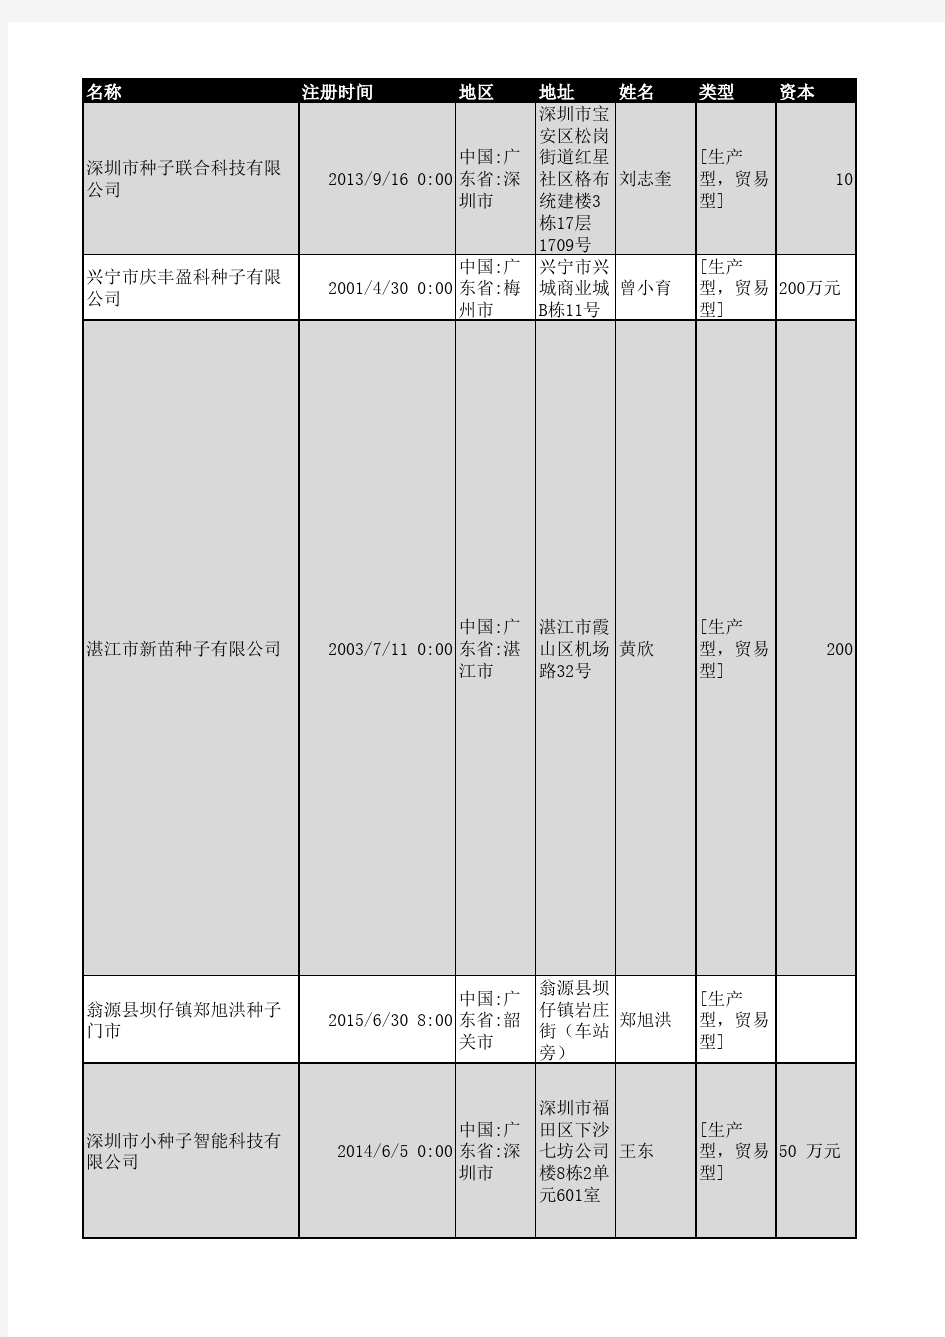 2018年广东省种子行业企业名录1189家